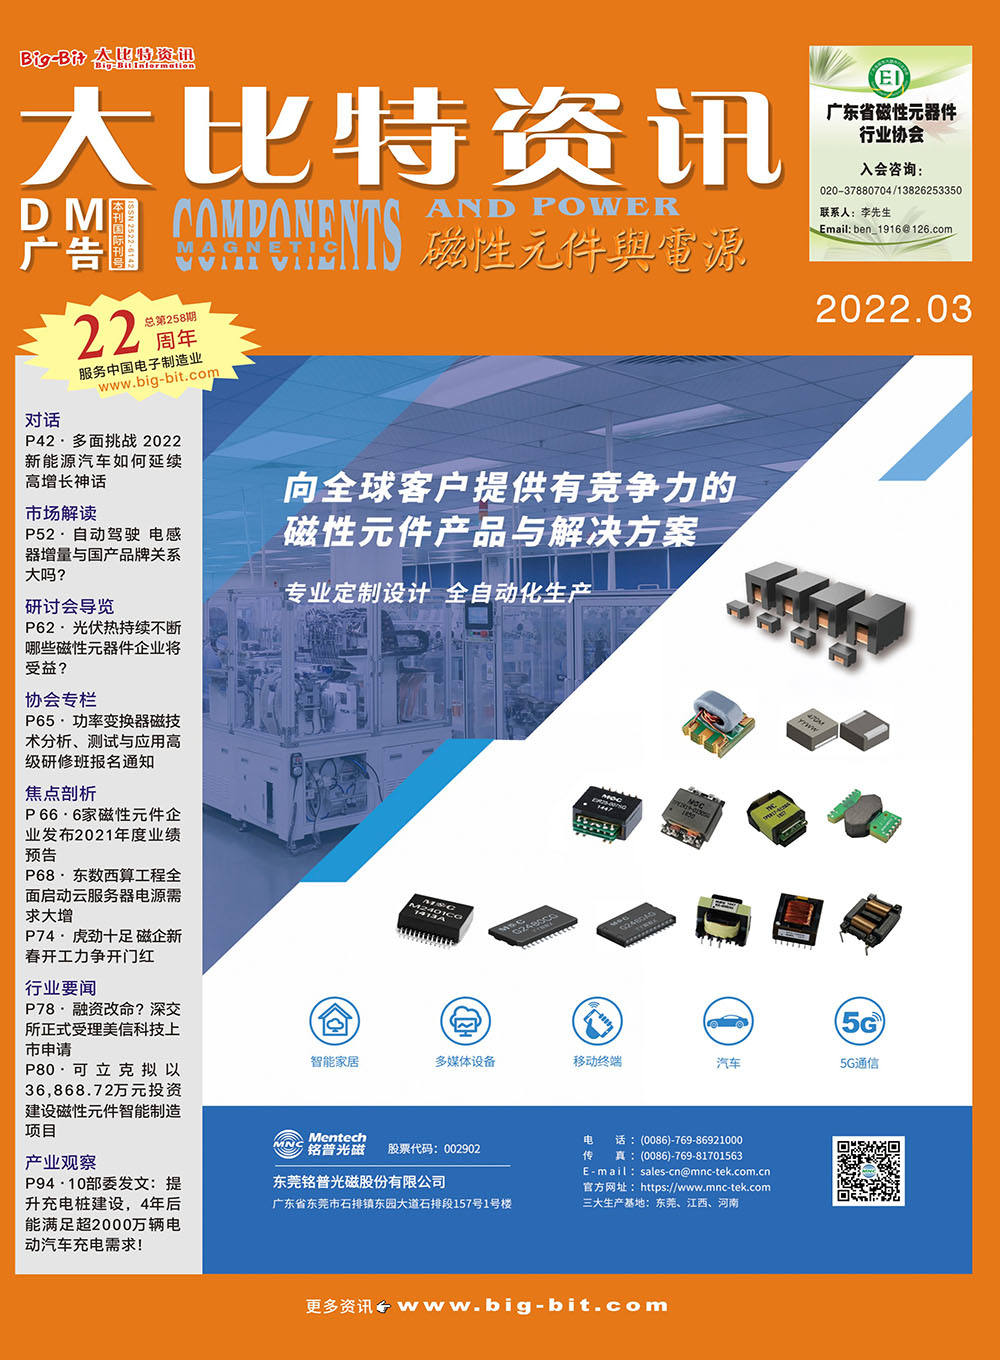 《磁性元件與電源》雜志2022年03月刊